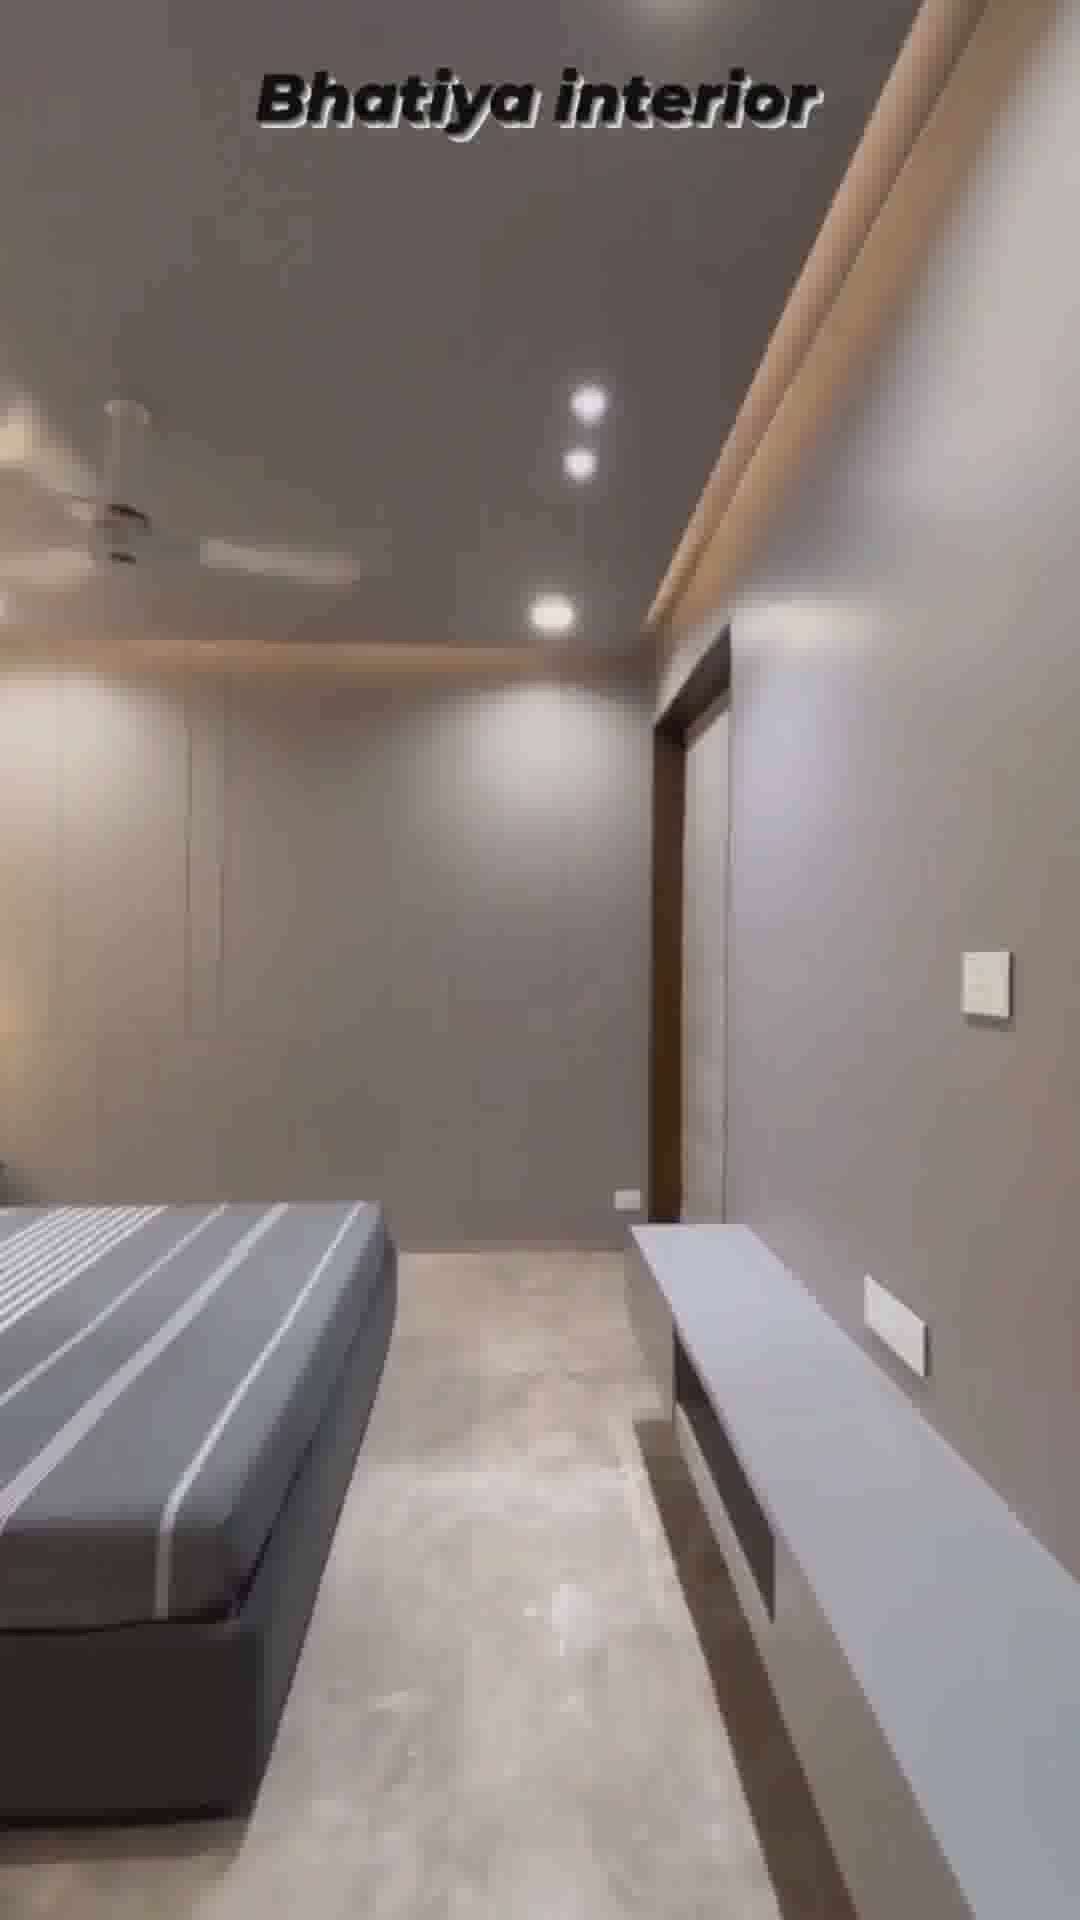 Best Bedroom Interior Design Ideas 2022 - #BedroomDecor  #MasterBedroom  #BedroomDesigns  #ModernBedMaking